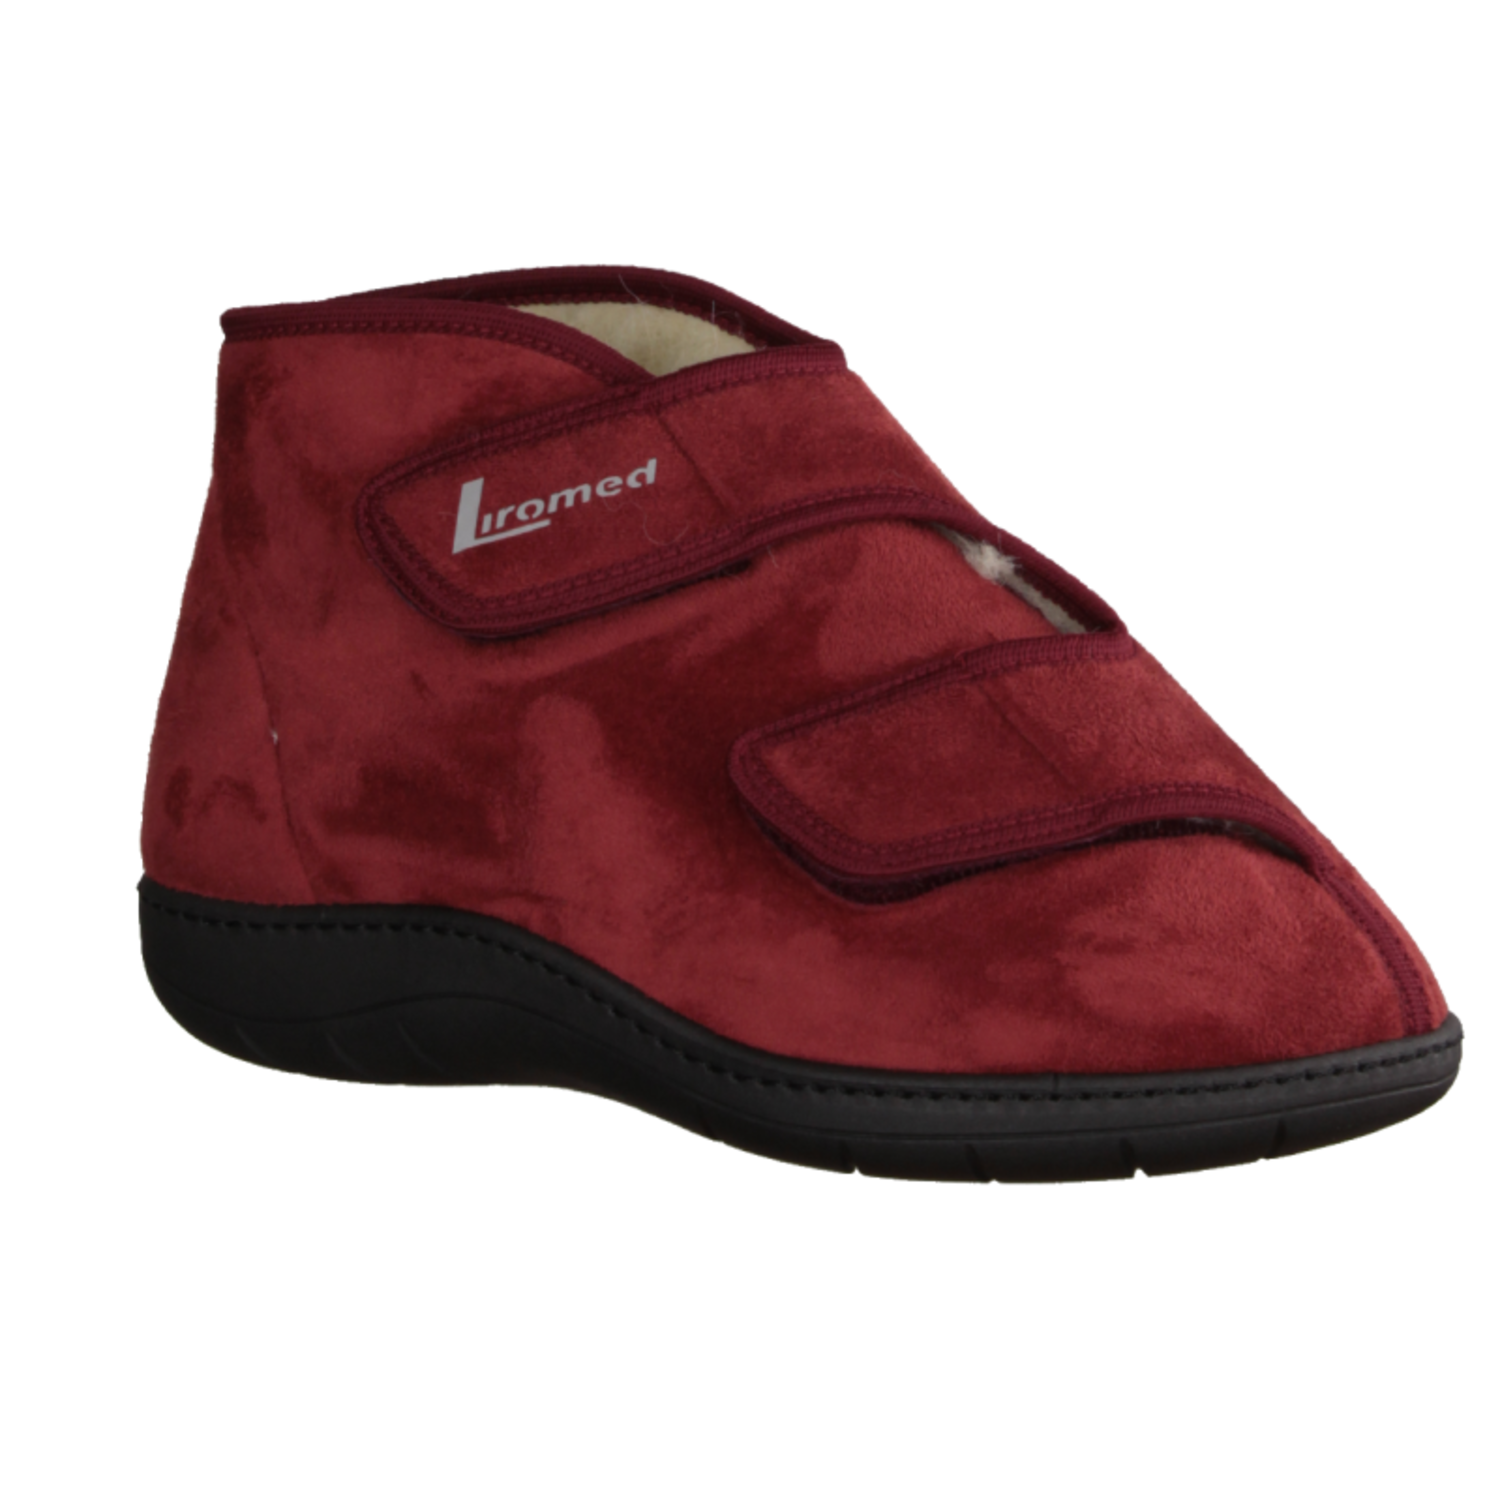 Medizinische Schuhe Liromed 477-3087 Bordo, Unisex, Textil, NEU - Herrenschuhe - Bild-1